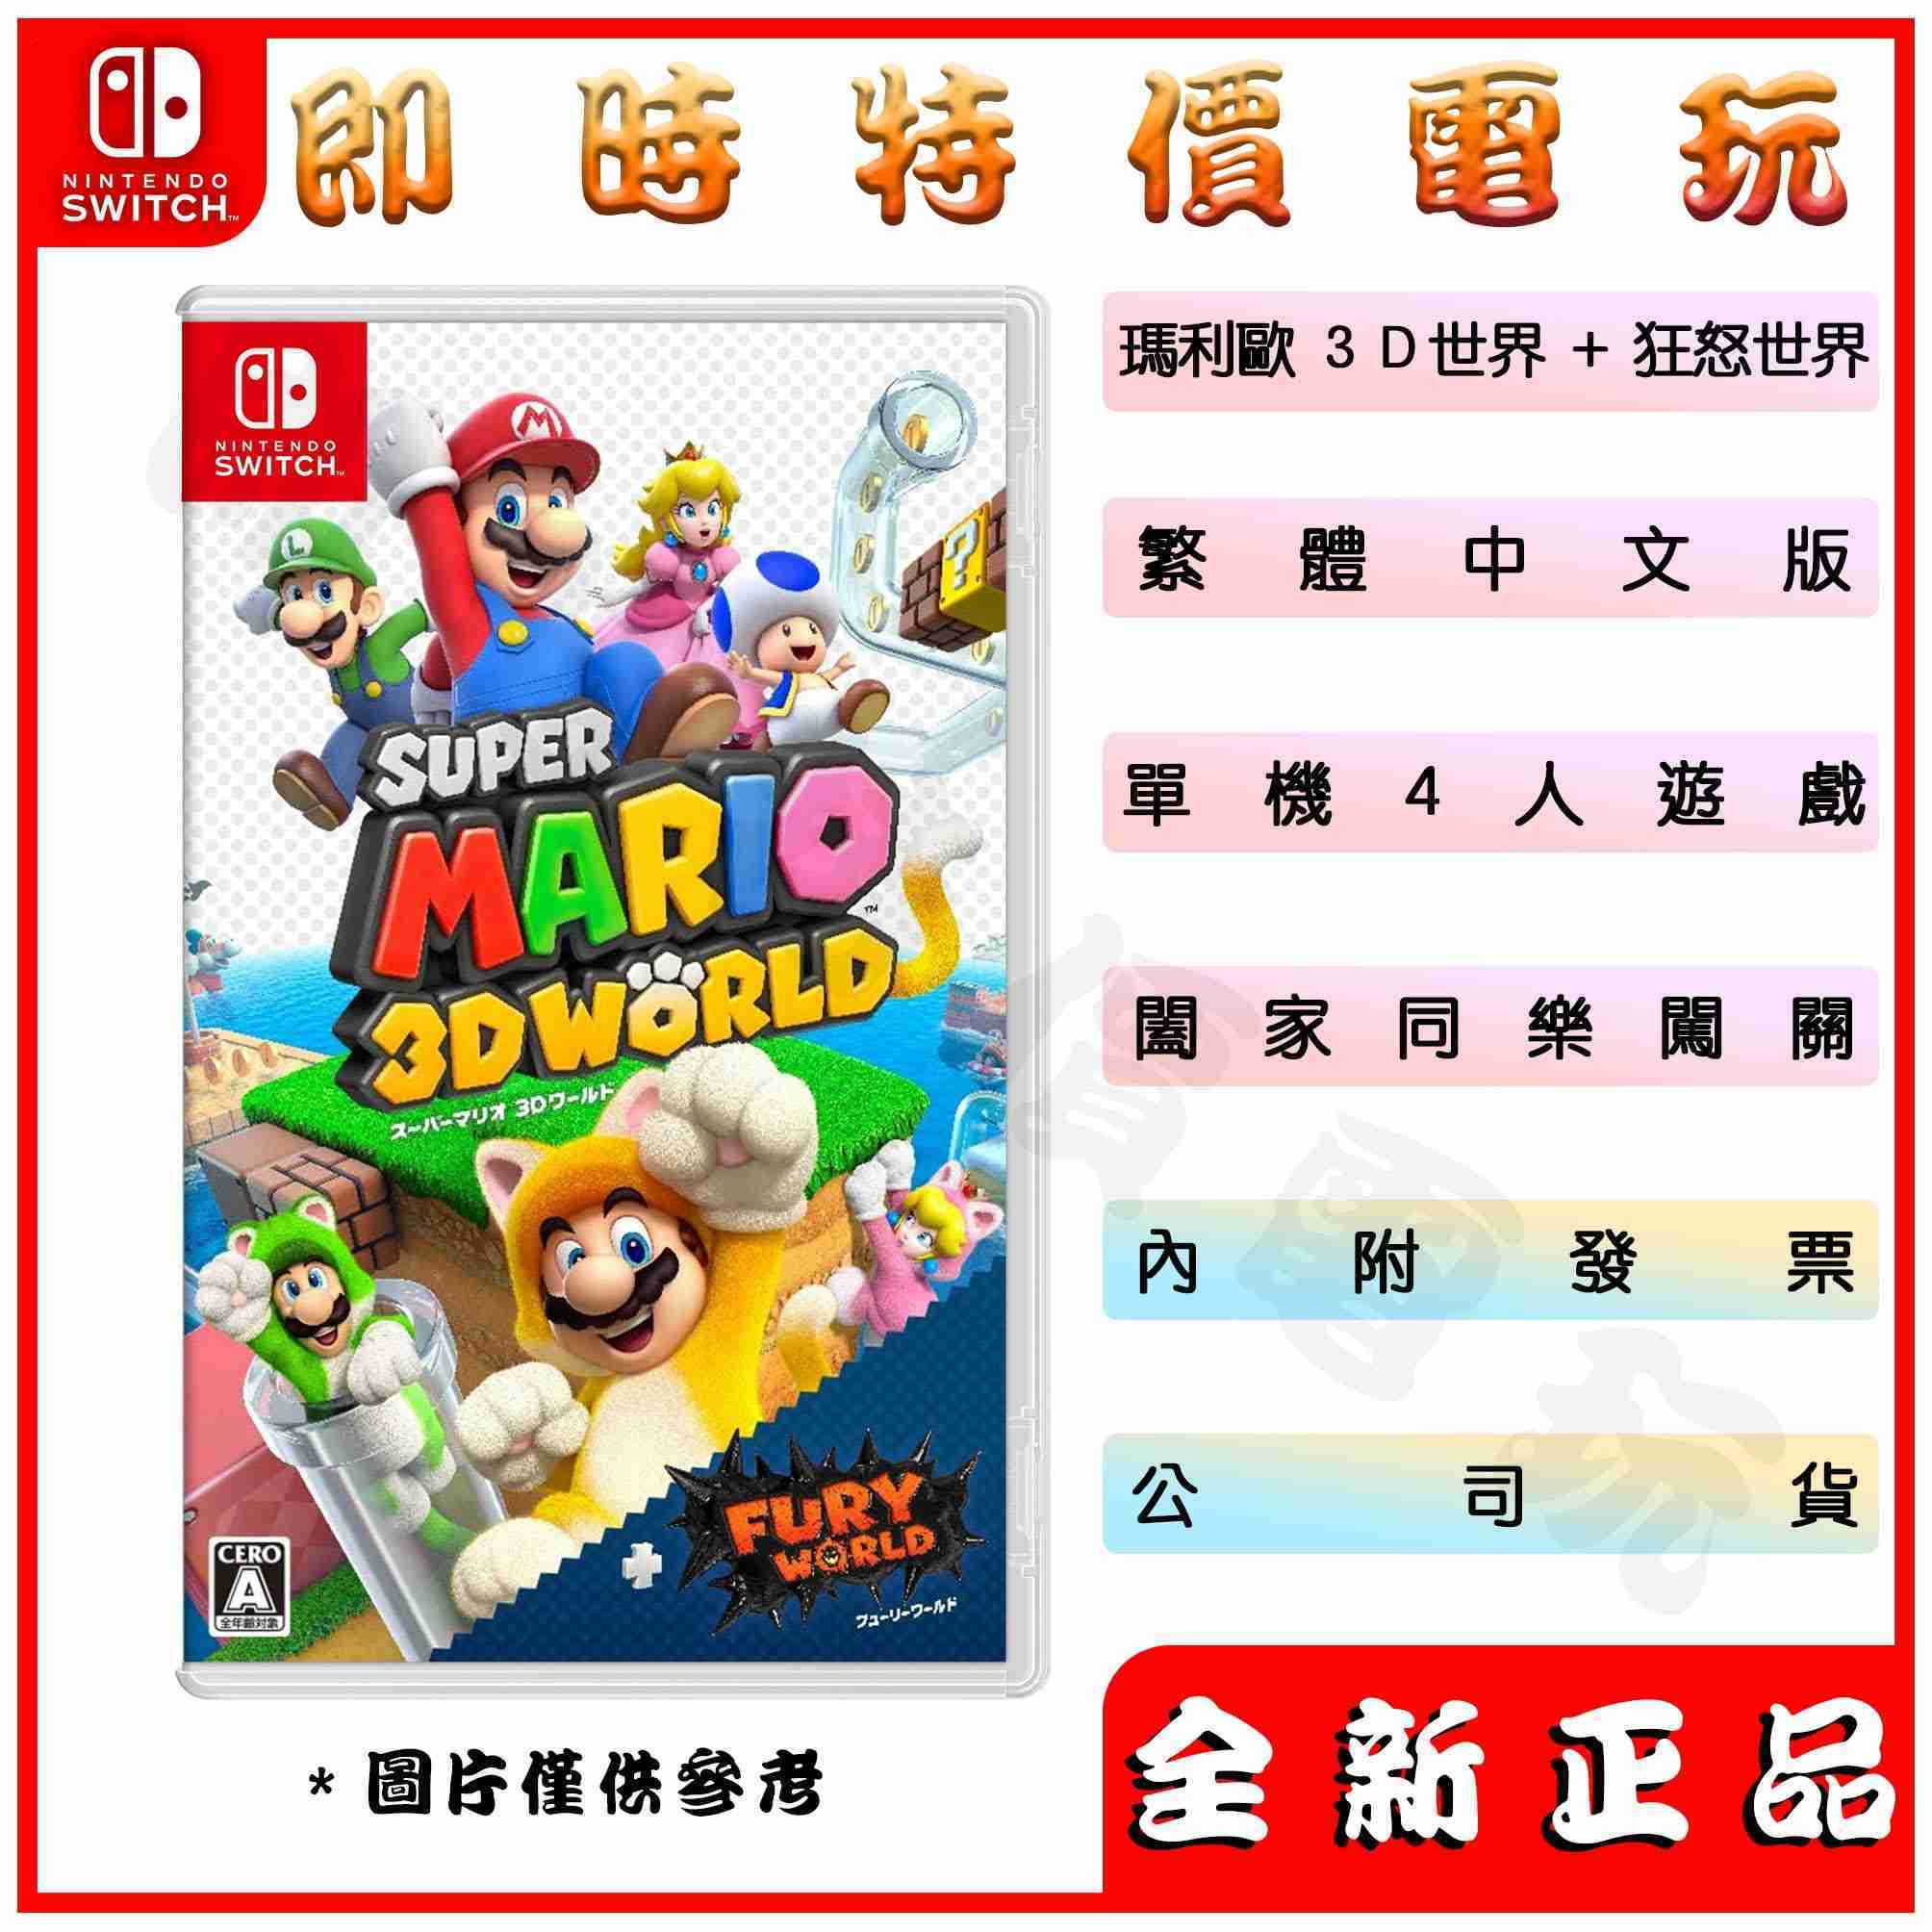 全新現貨 公司貨 NS switch超級瑪利歐 3D世界+狂怒世界 中文版